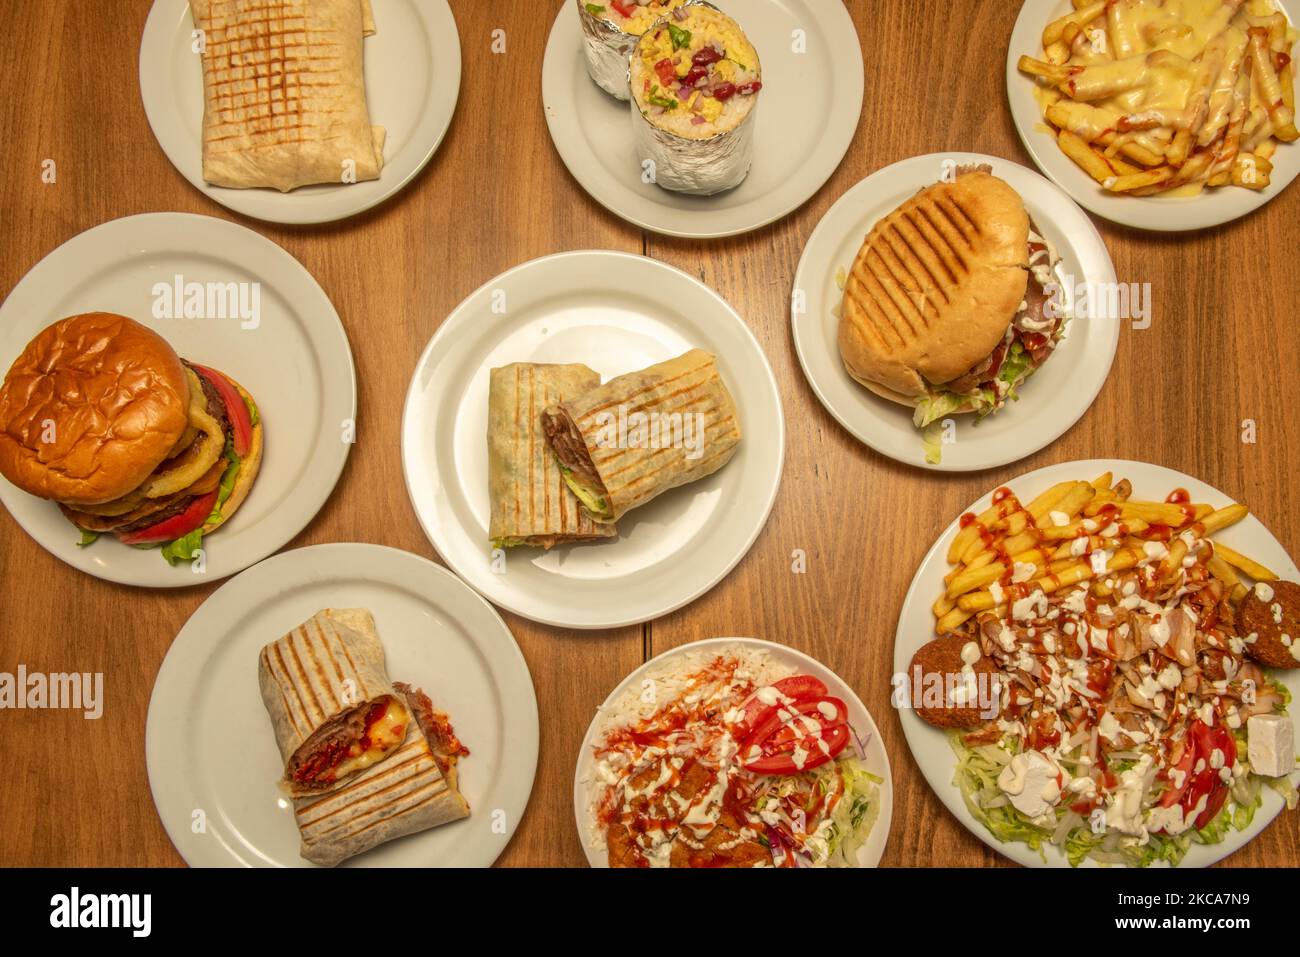 Ensemble de plats de restauration rapide avec hamburgers, burritos et plaques de blé dur et kebab avec falafel et sauces Banque D'Images